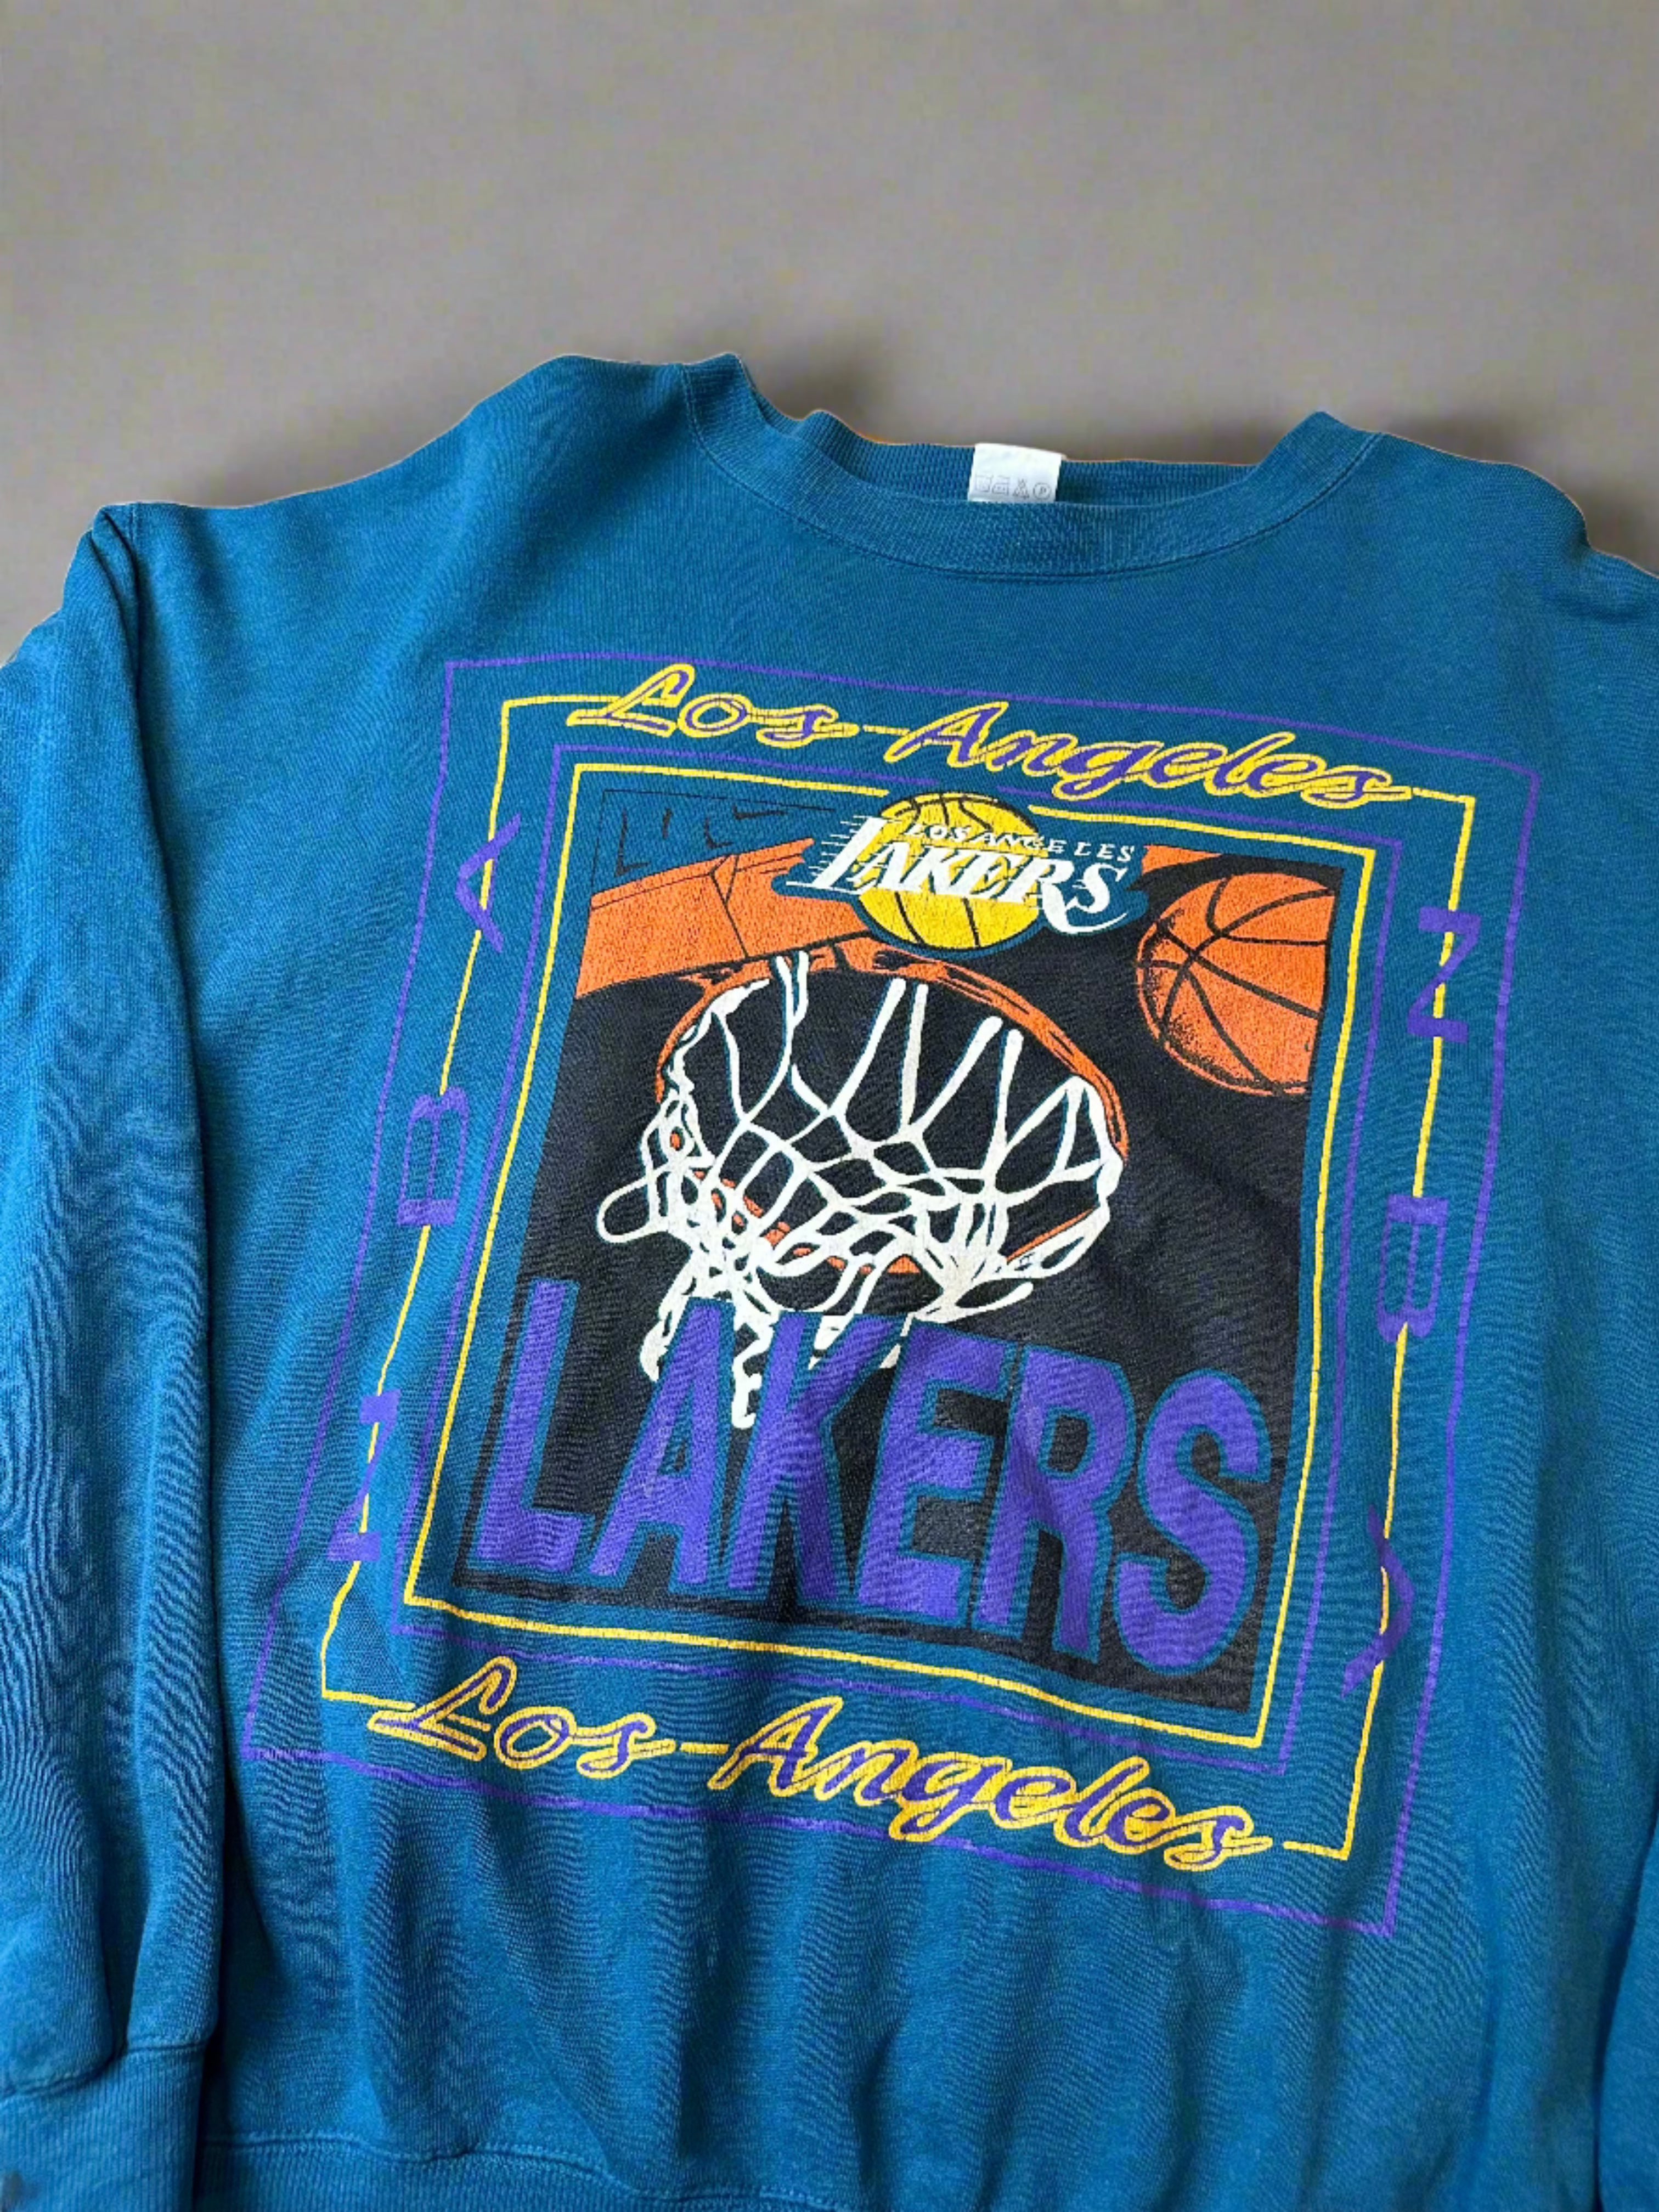 Vintage Lakers 90s Crewneck - size XL